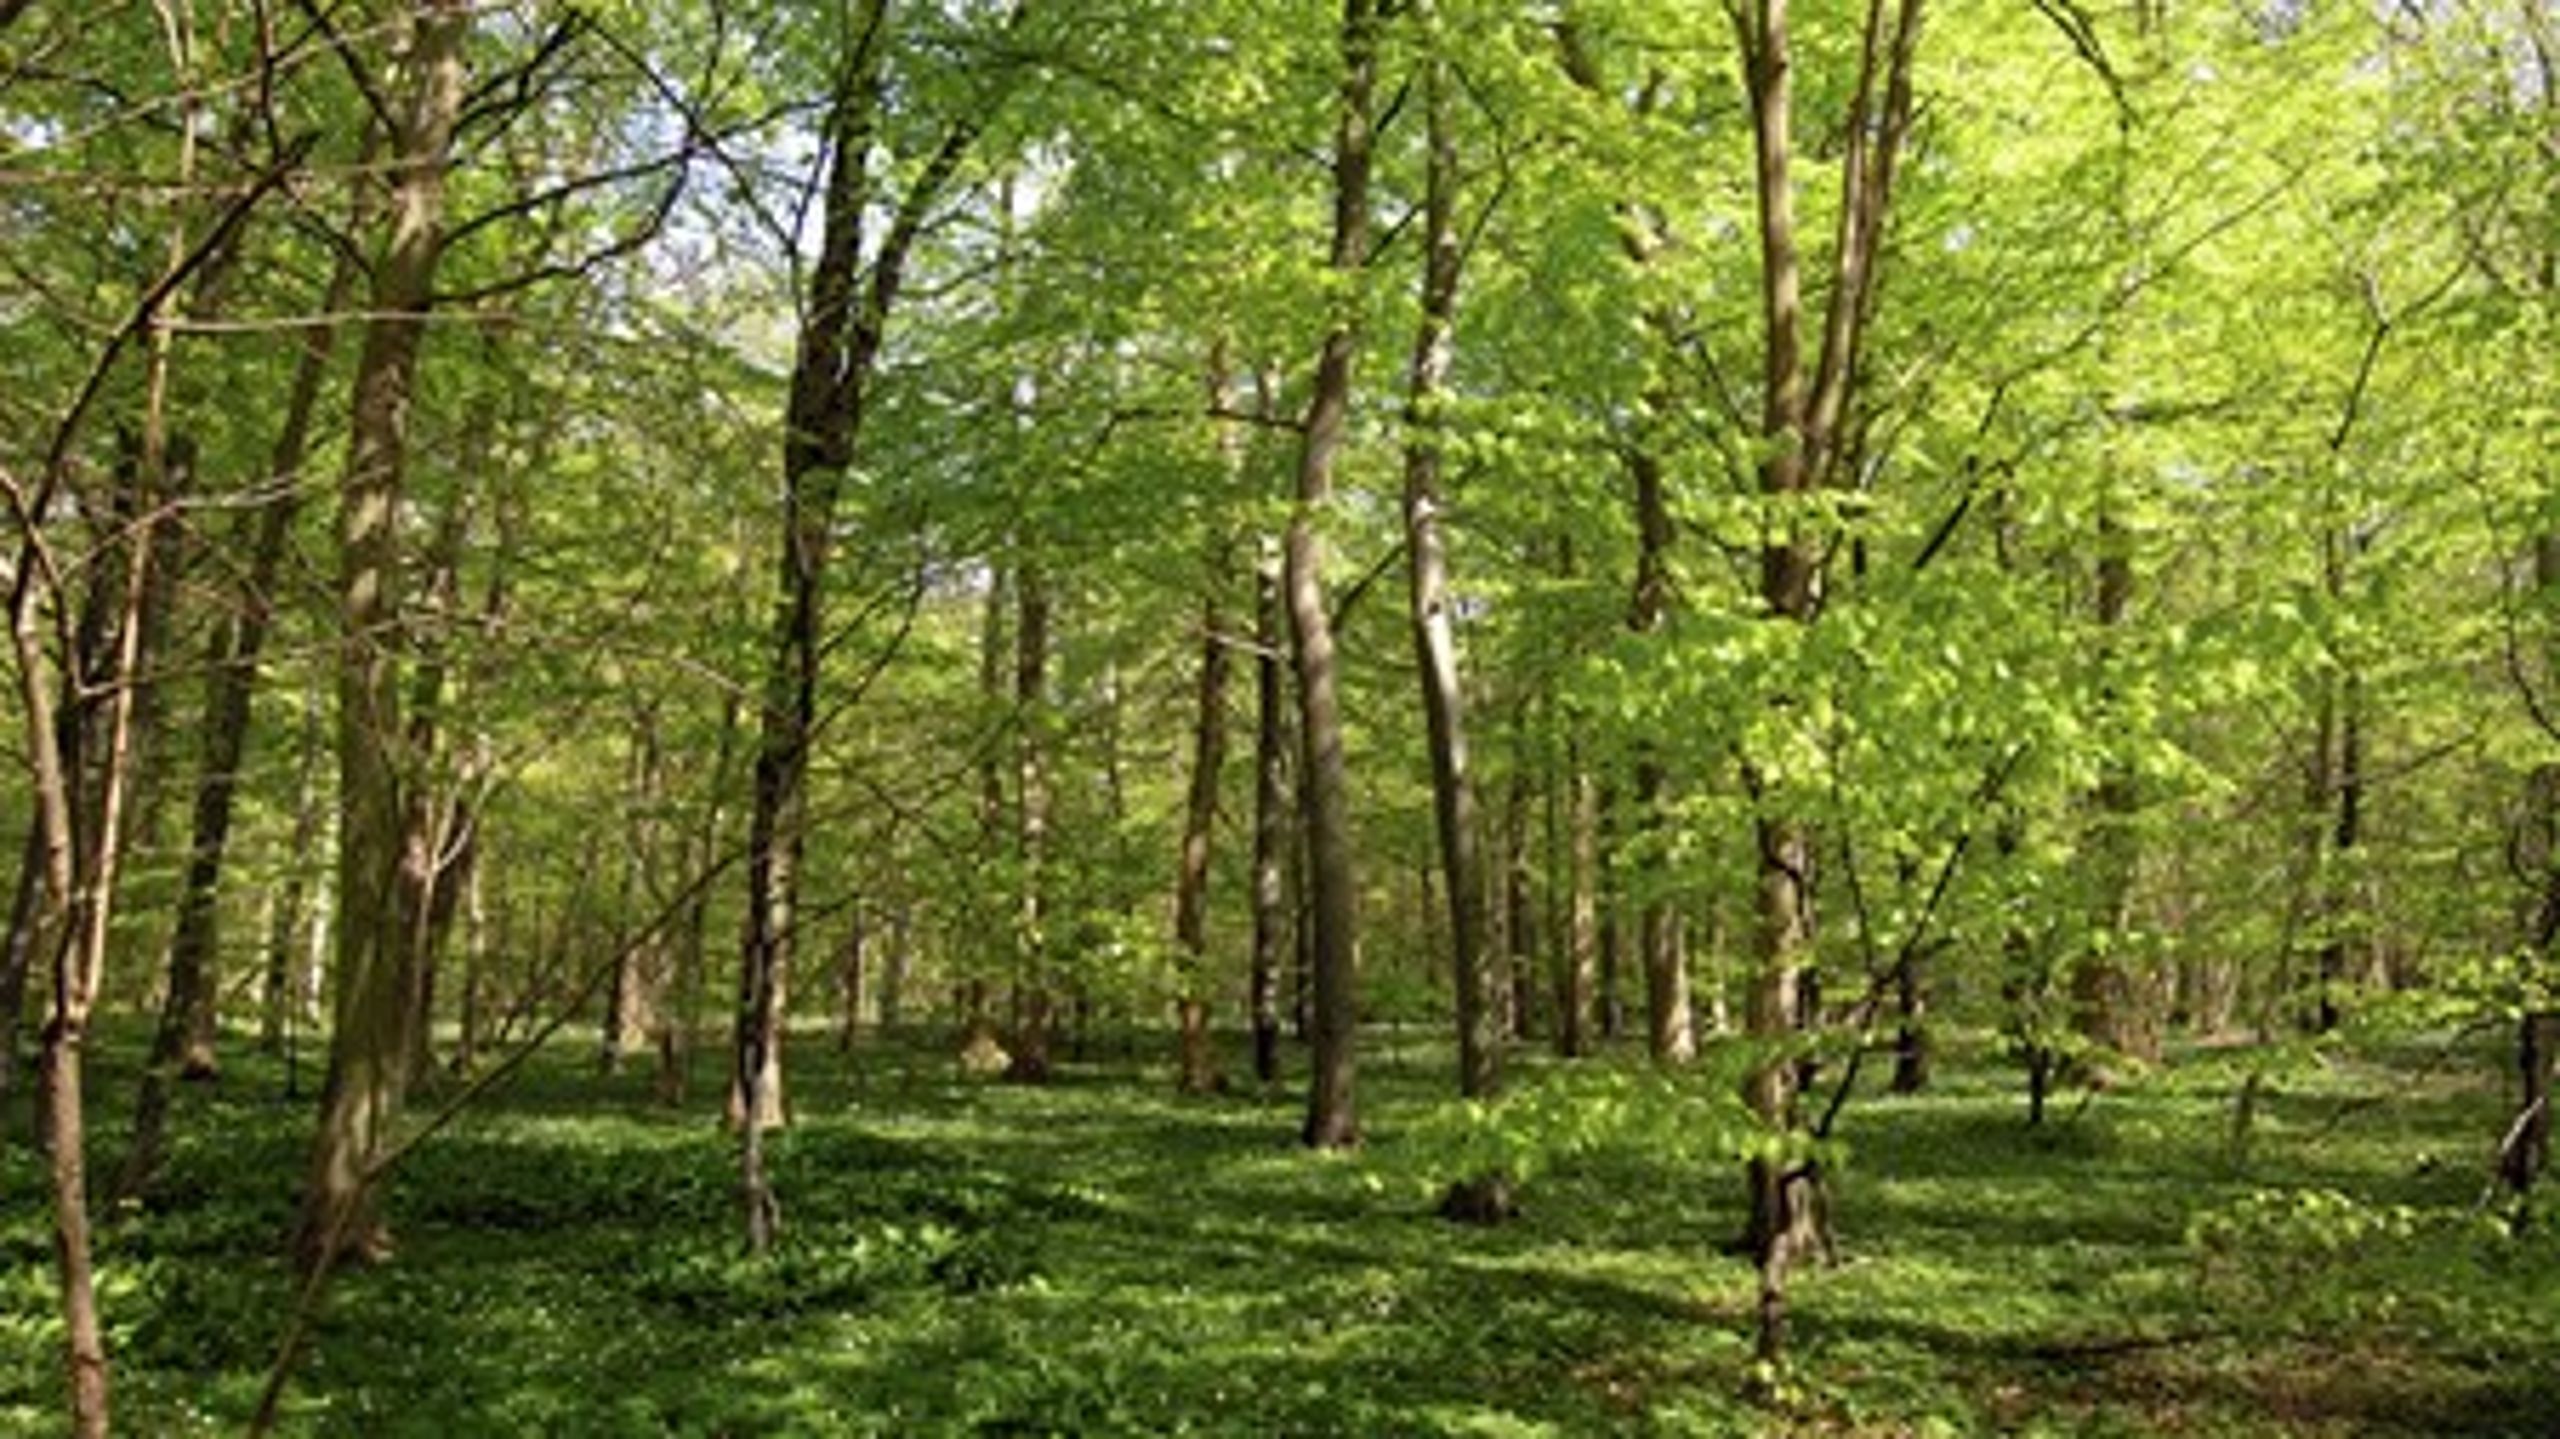 Der bør fokuseres på skovene og den lysåbne natur, hvis man vil gøre en særlig indsats for biodiversiteten, lyder det fra Hans Henrik Bruun.